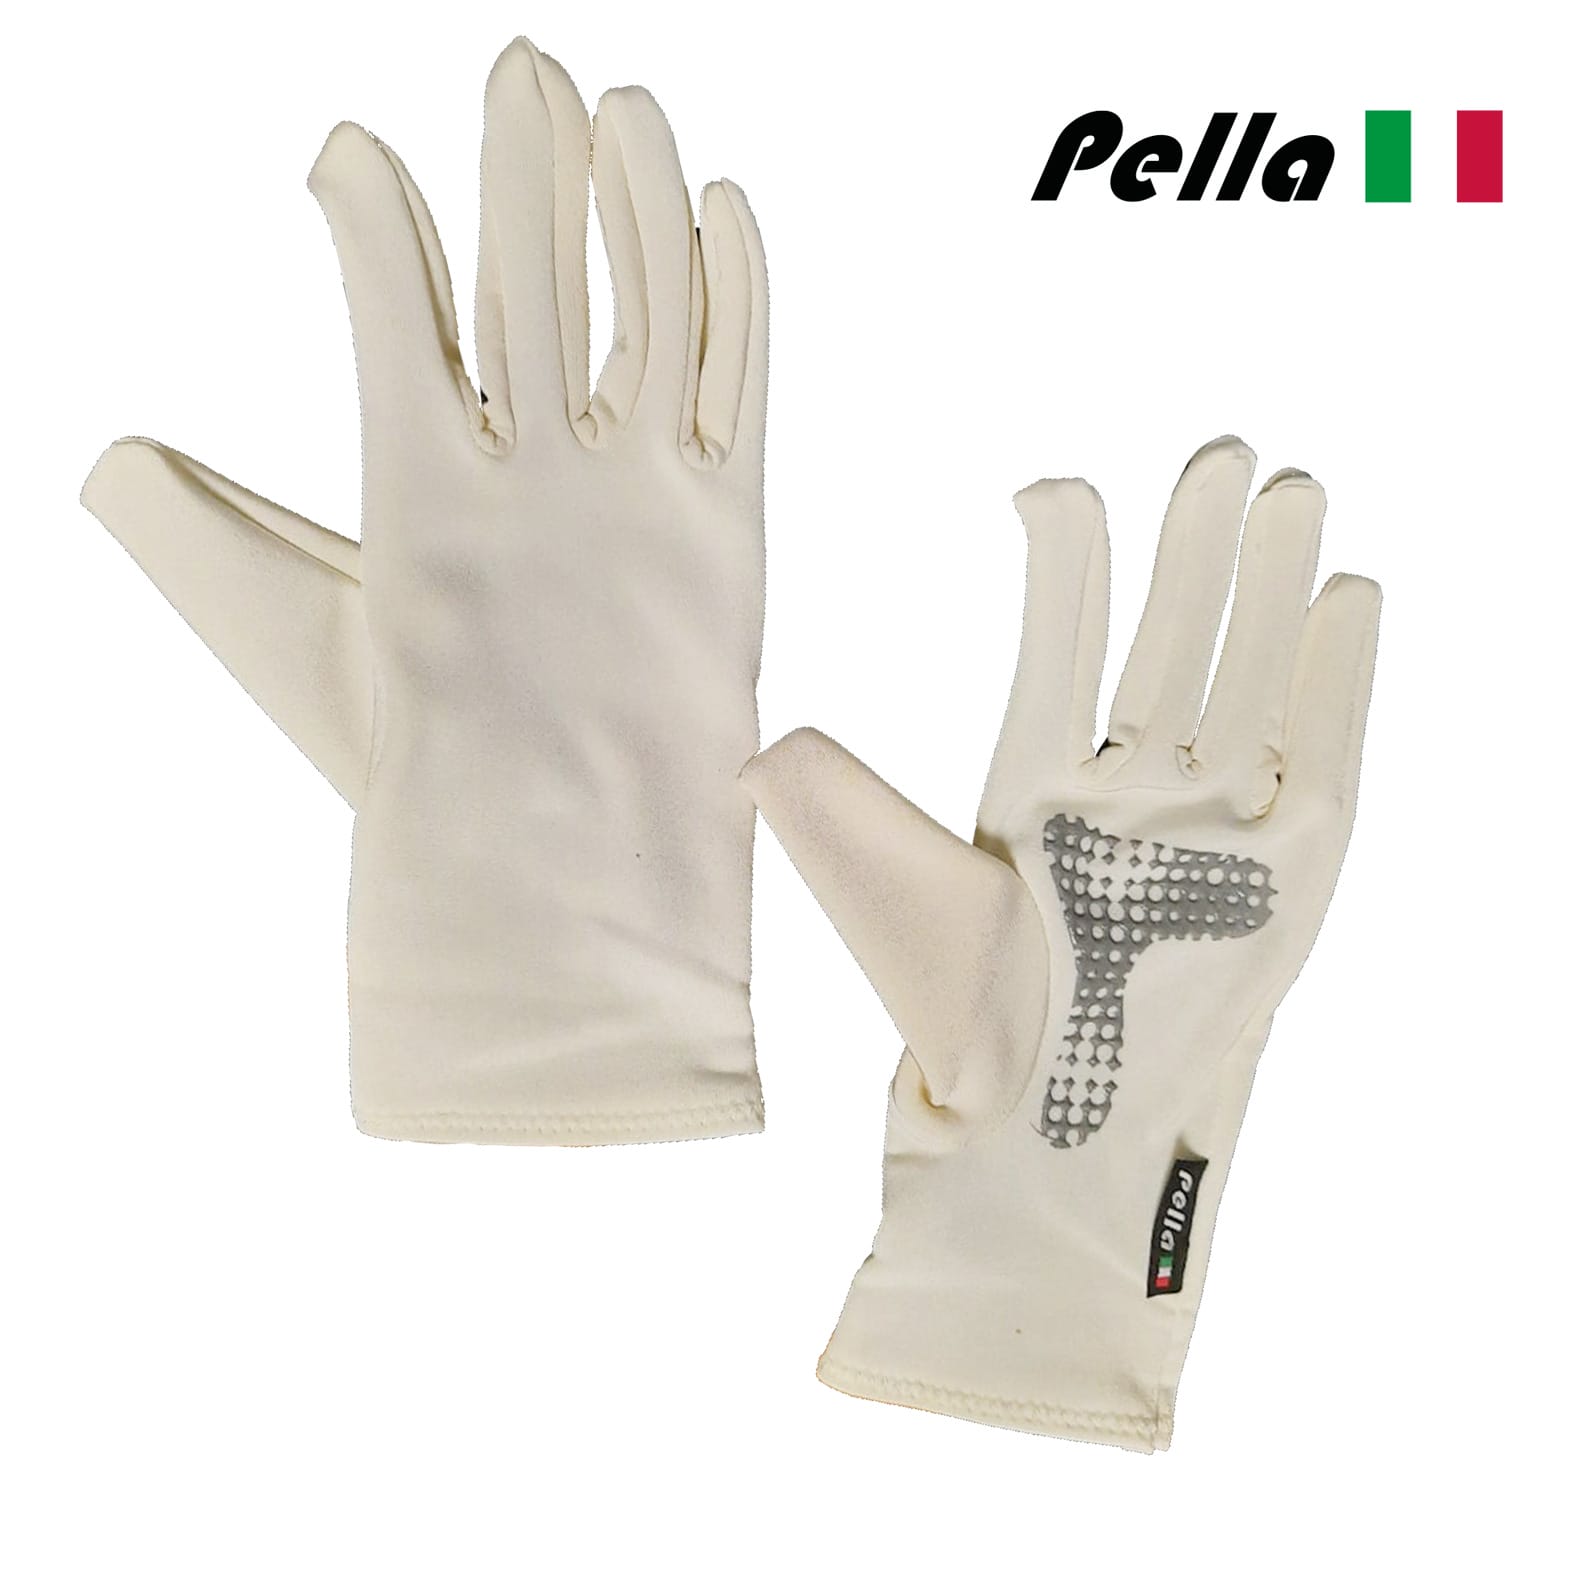 Mid season Cycling gloves/under gloves SPORT - PellaSportswear